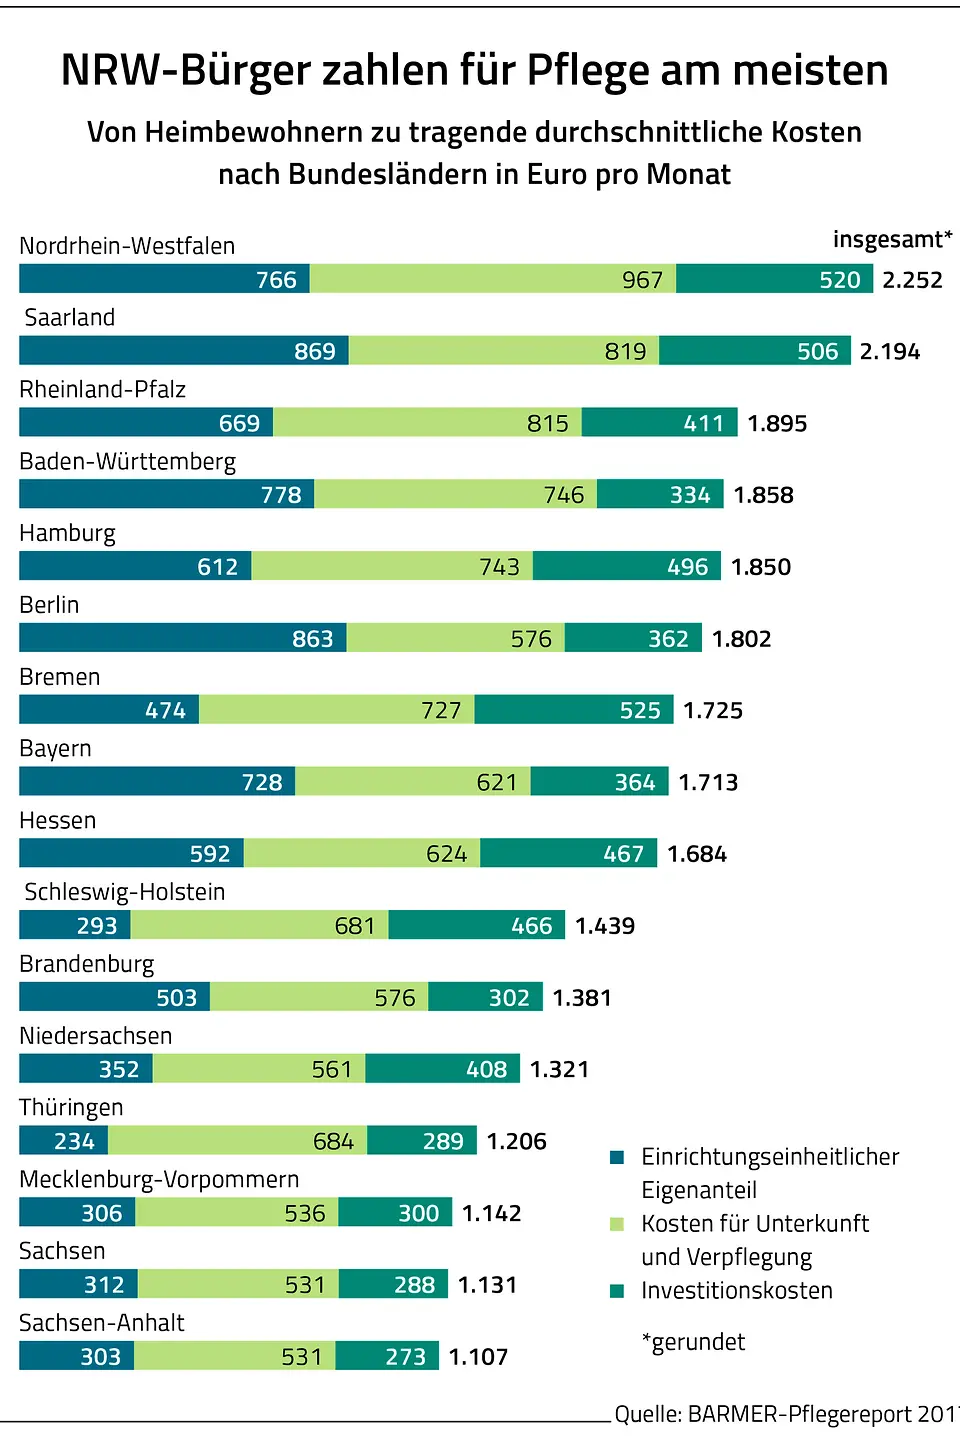 Die Grafik zeigt die von Heimbewohnern zu tragende durchschnittliche Kosten nach Bundesländern in Euro pro Monat.